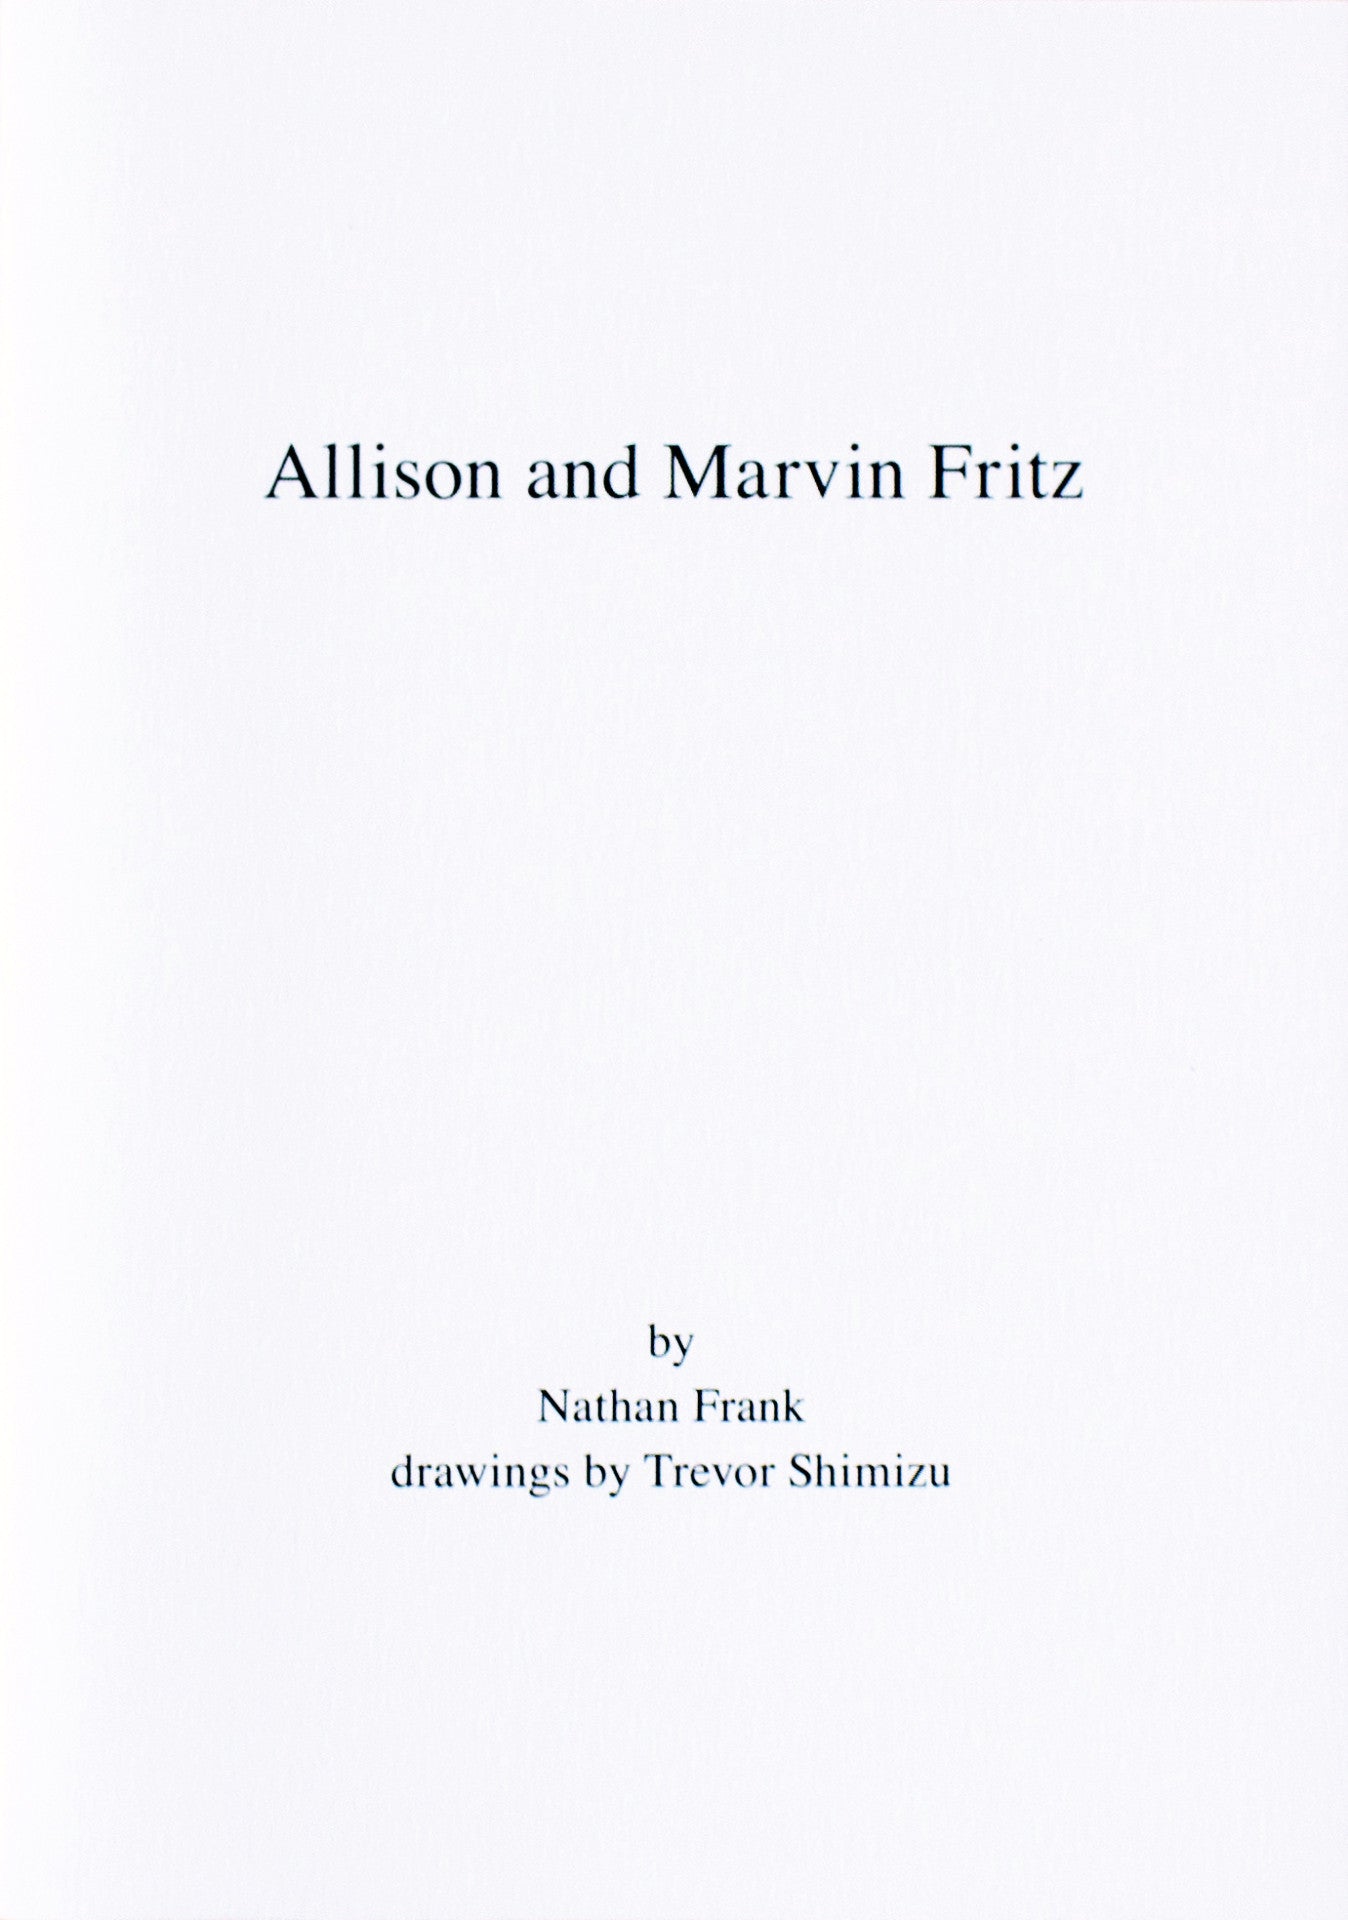 Nathan Frank and Trevor Shimizu: Allison and Marvin Fritz